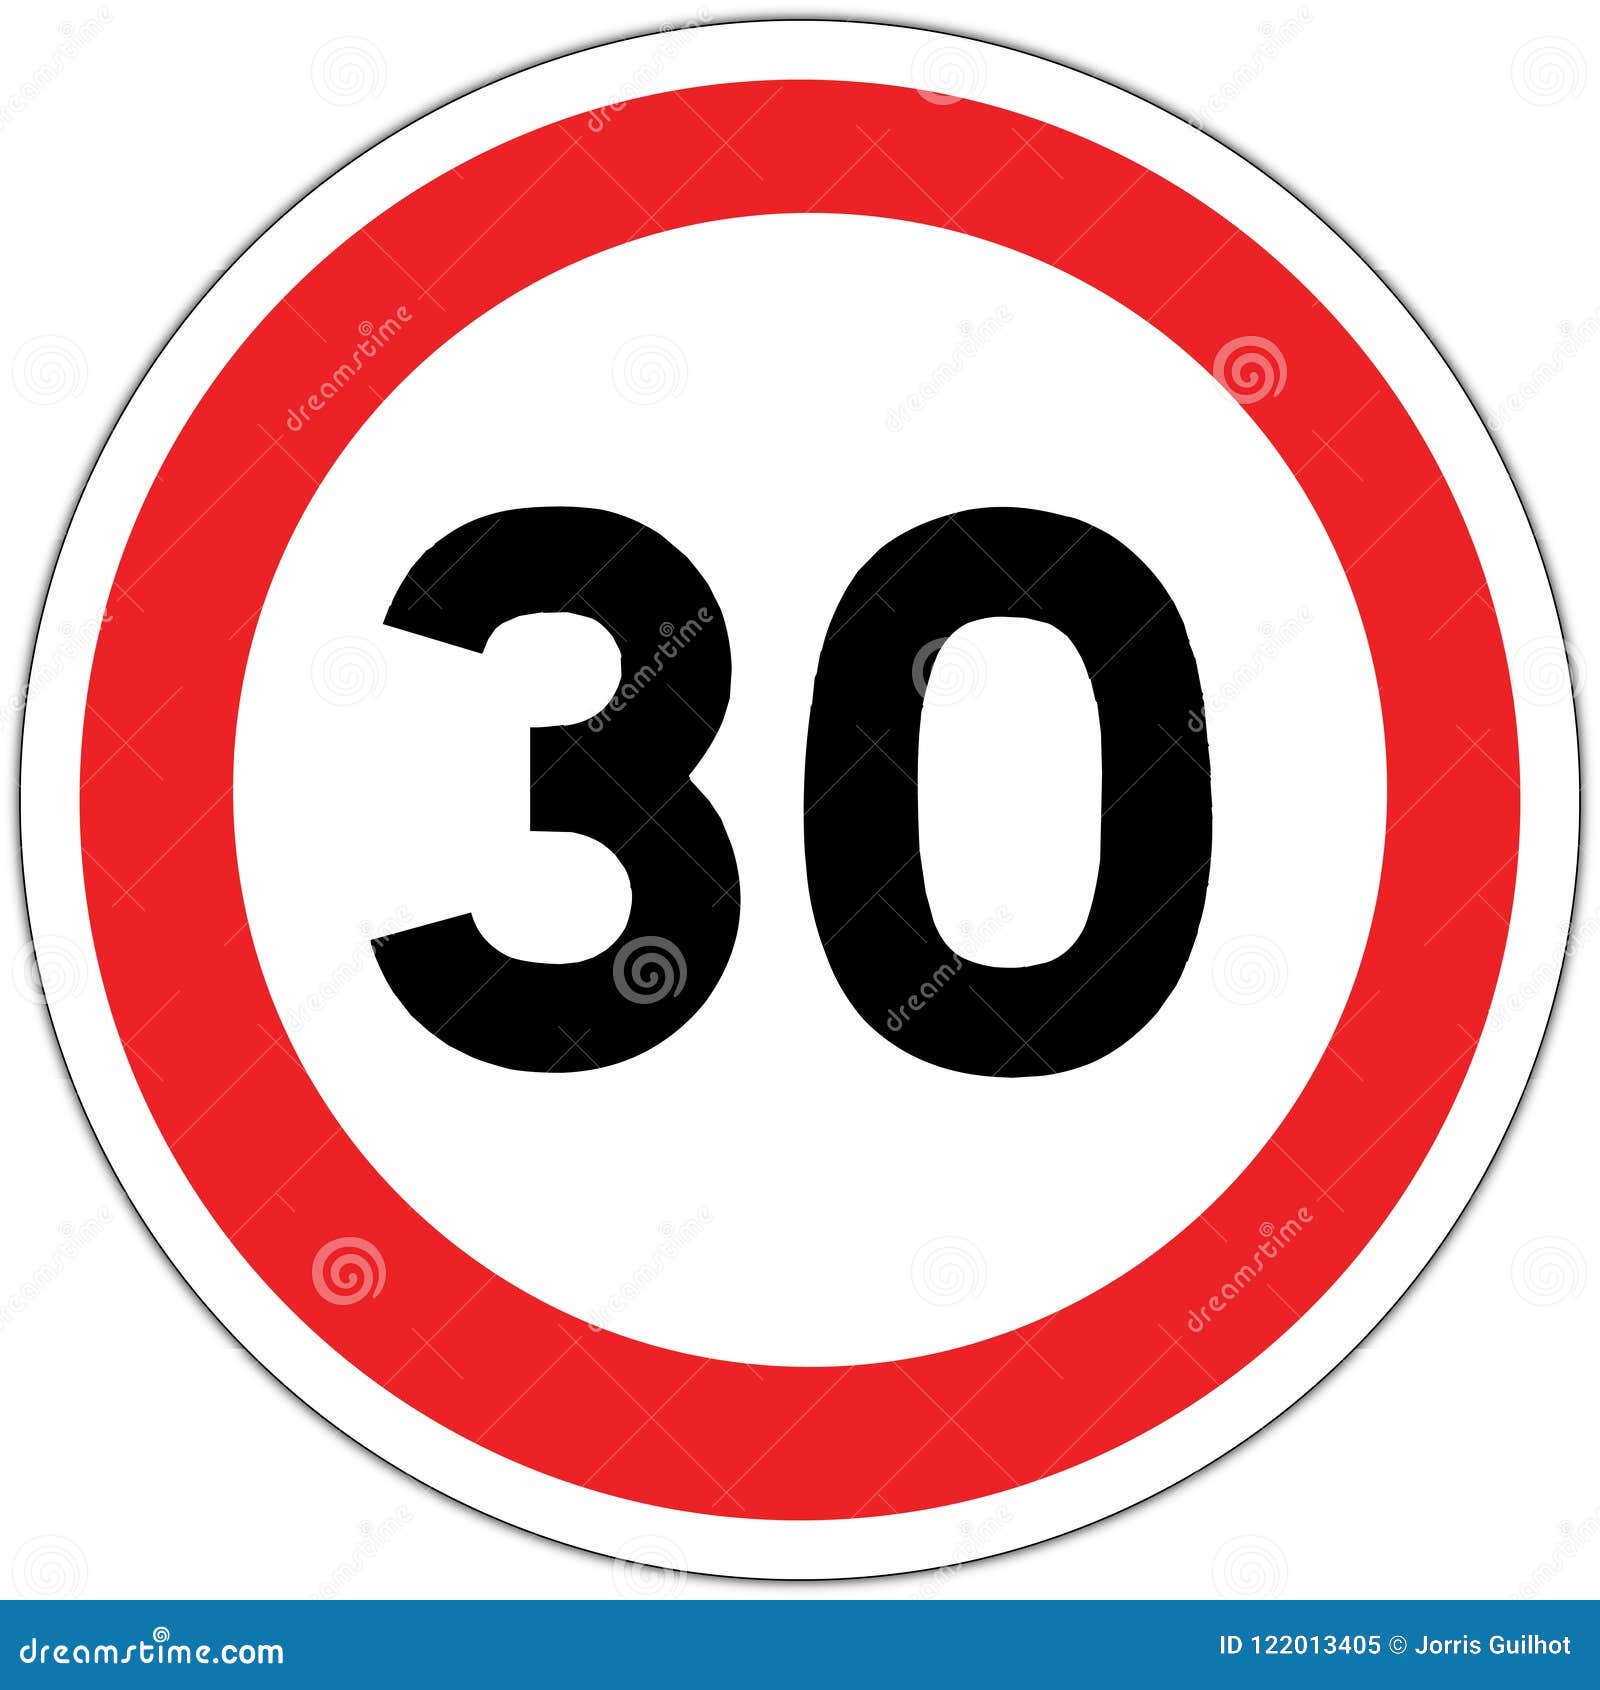 panneau de signalisation routier en france: limitation ÃÂ  30 km/h